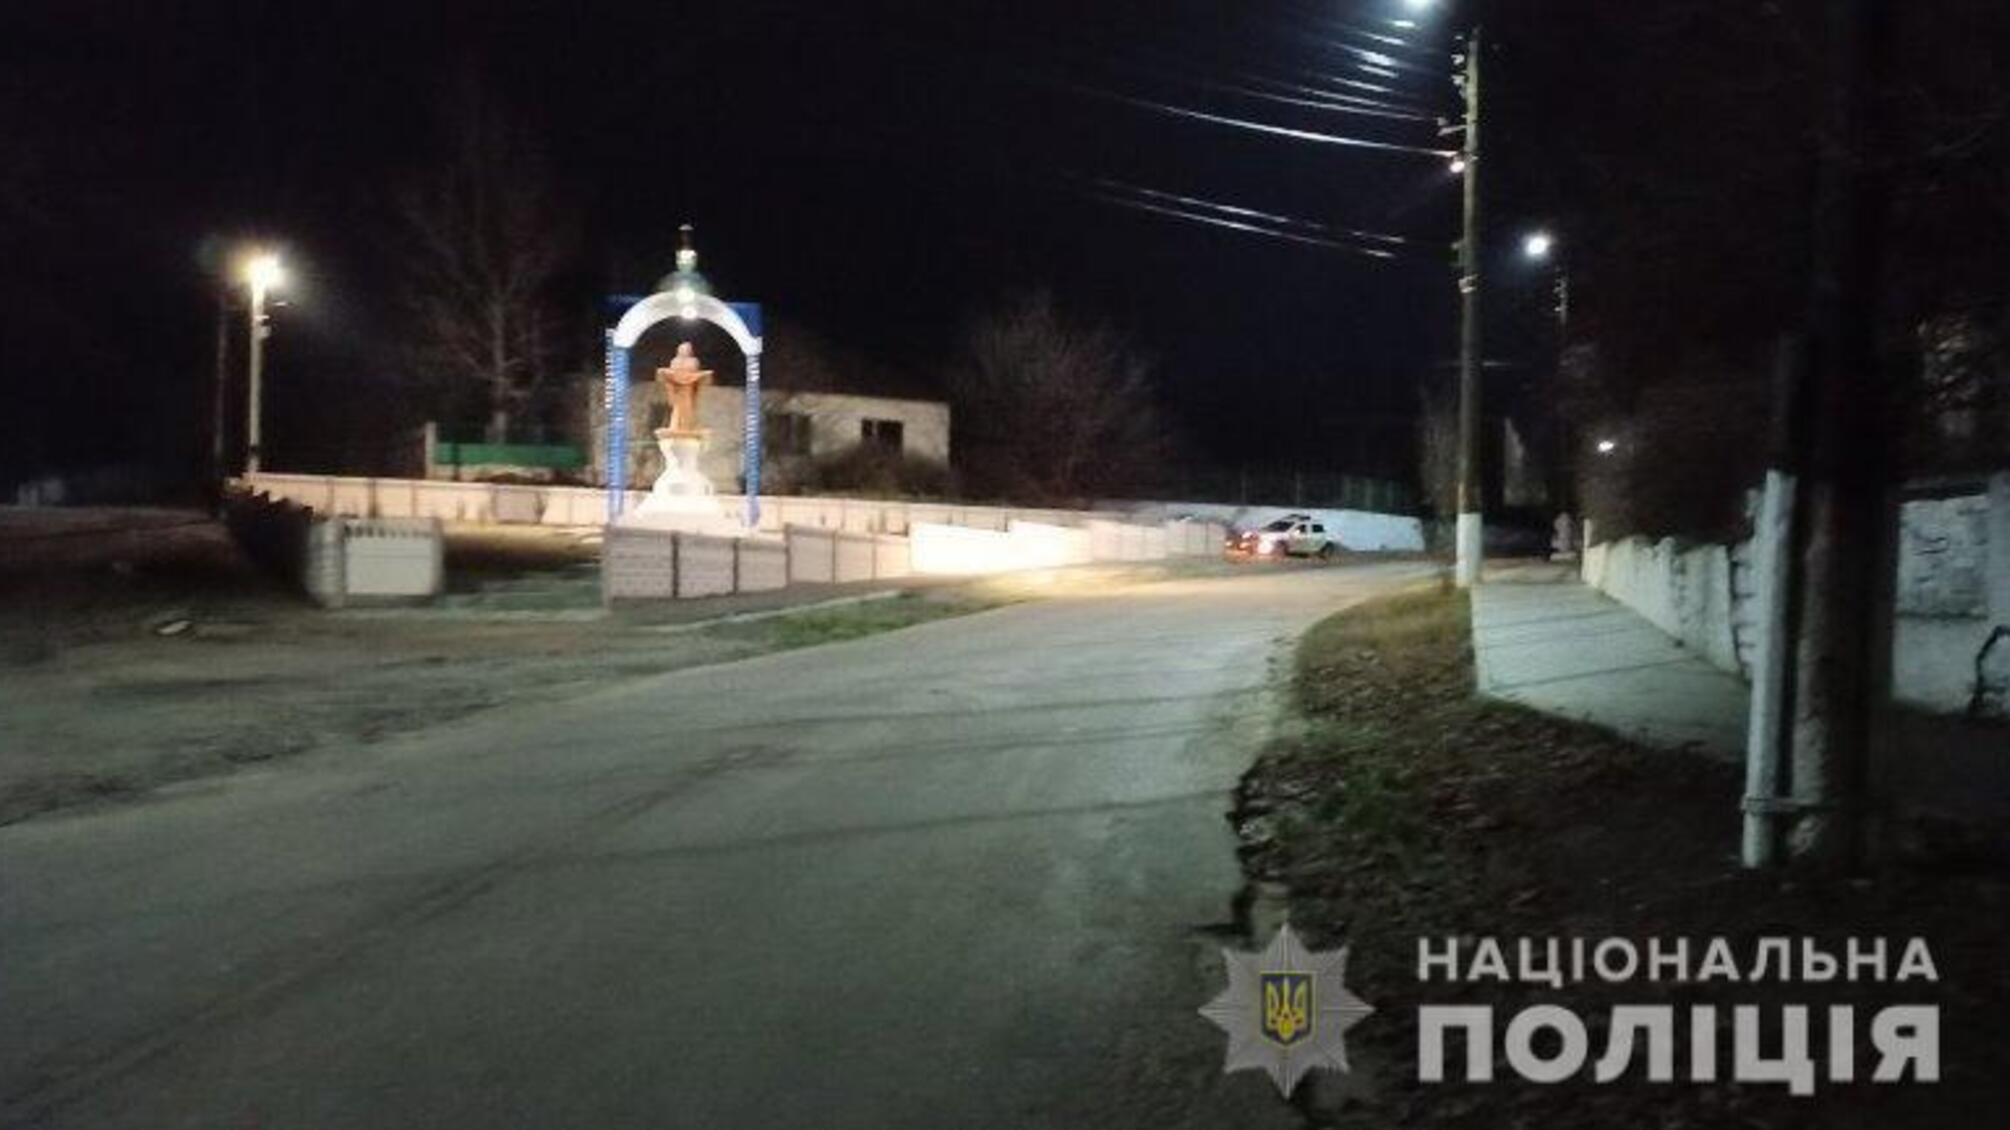 Поліцейські розслідують обставини ДТП в Білгород-Дністровському районі, в якій постраждала 3-річна дитина